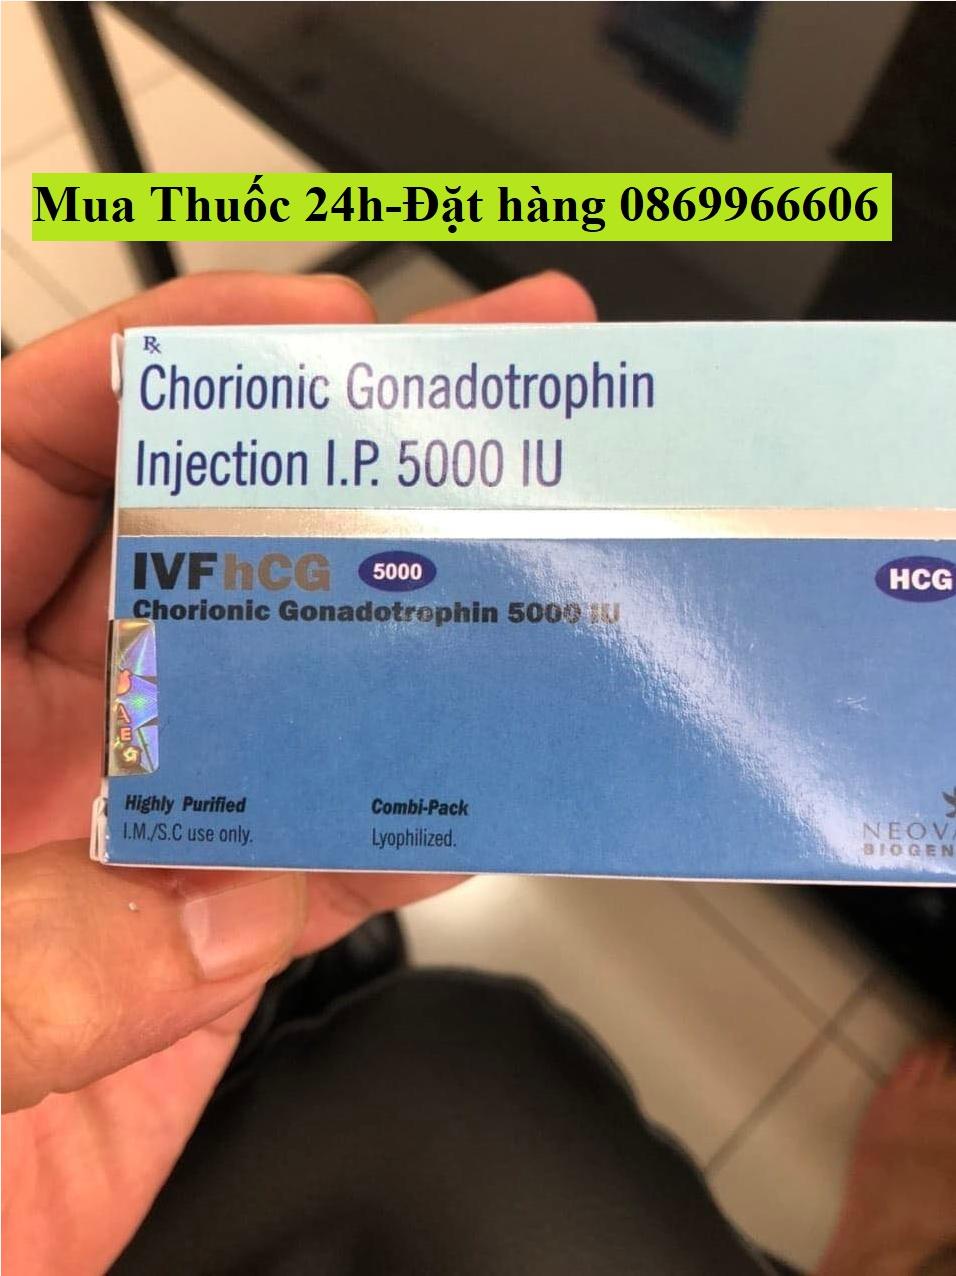 Thuốc IVF Hcg 500 Chorionic gonadotropin giá bao nhiêu mua ở đâu?